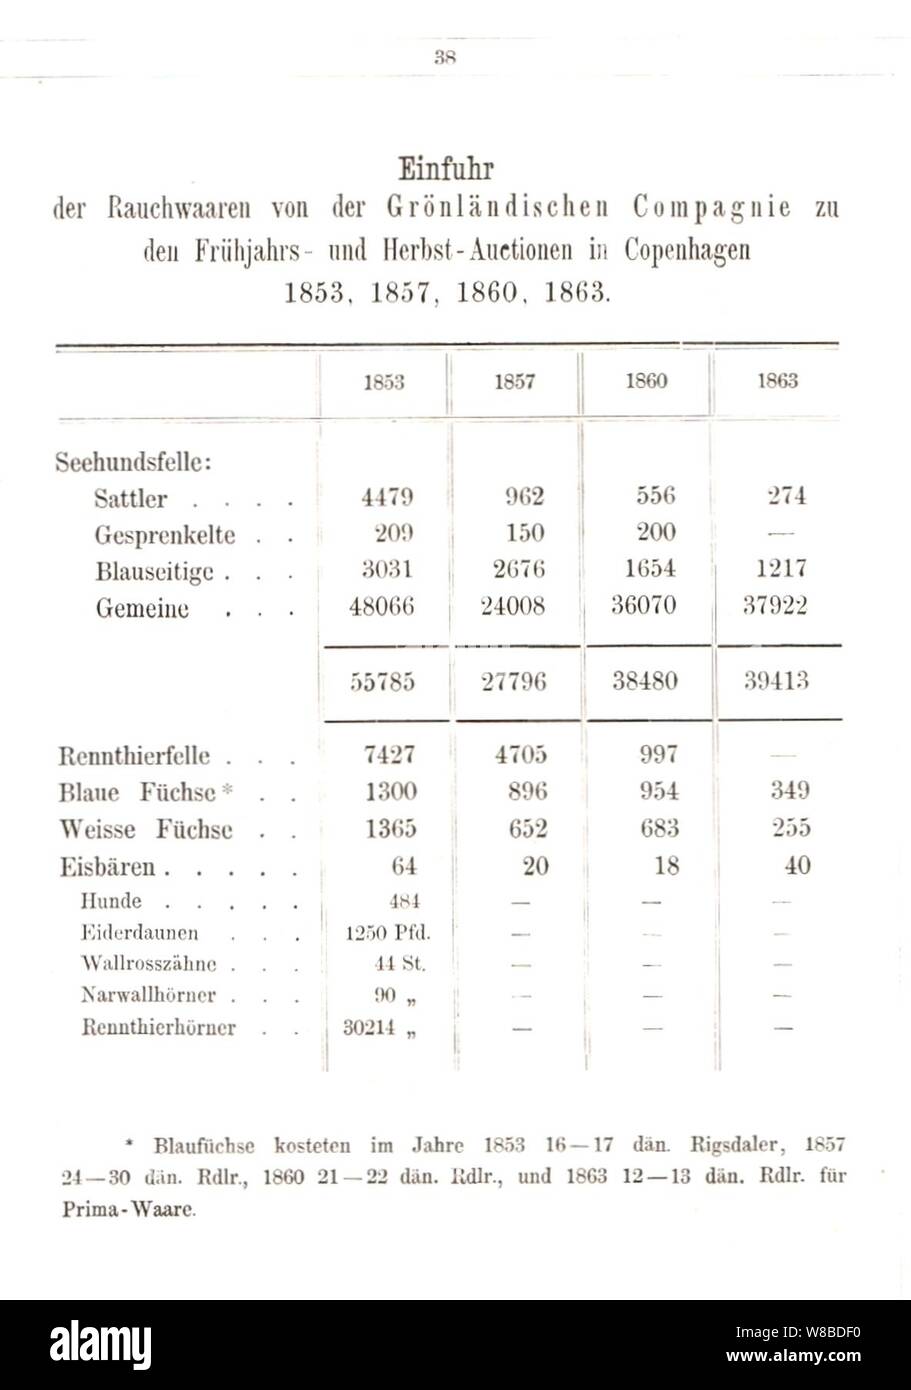 Der Rauchwaarenhandel von Heinrich Lomer, 1864 (Seite 38); Einfuhr Rauchwaren Grönländische Compagnie Auktionen Kopenhagen 1853, 1857,1860, 1863. Stock Photo